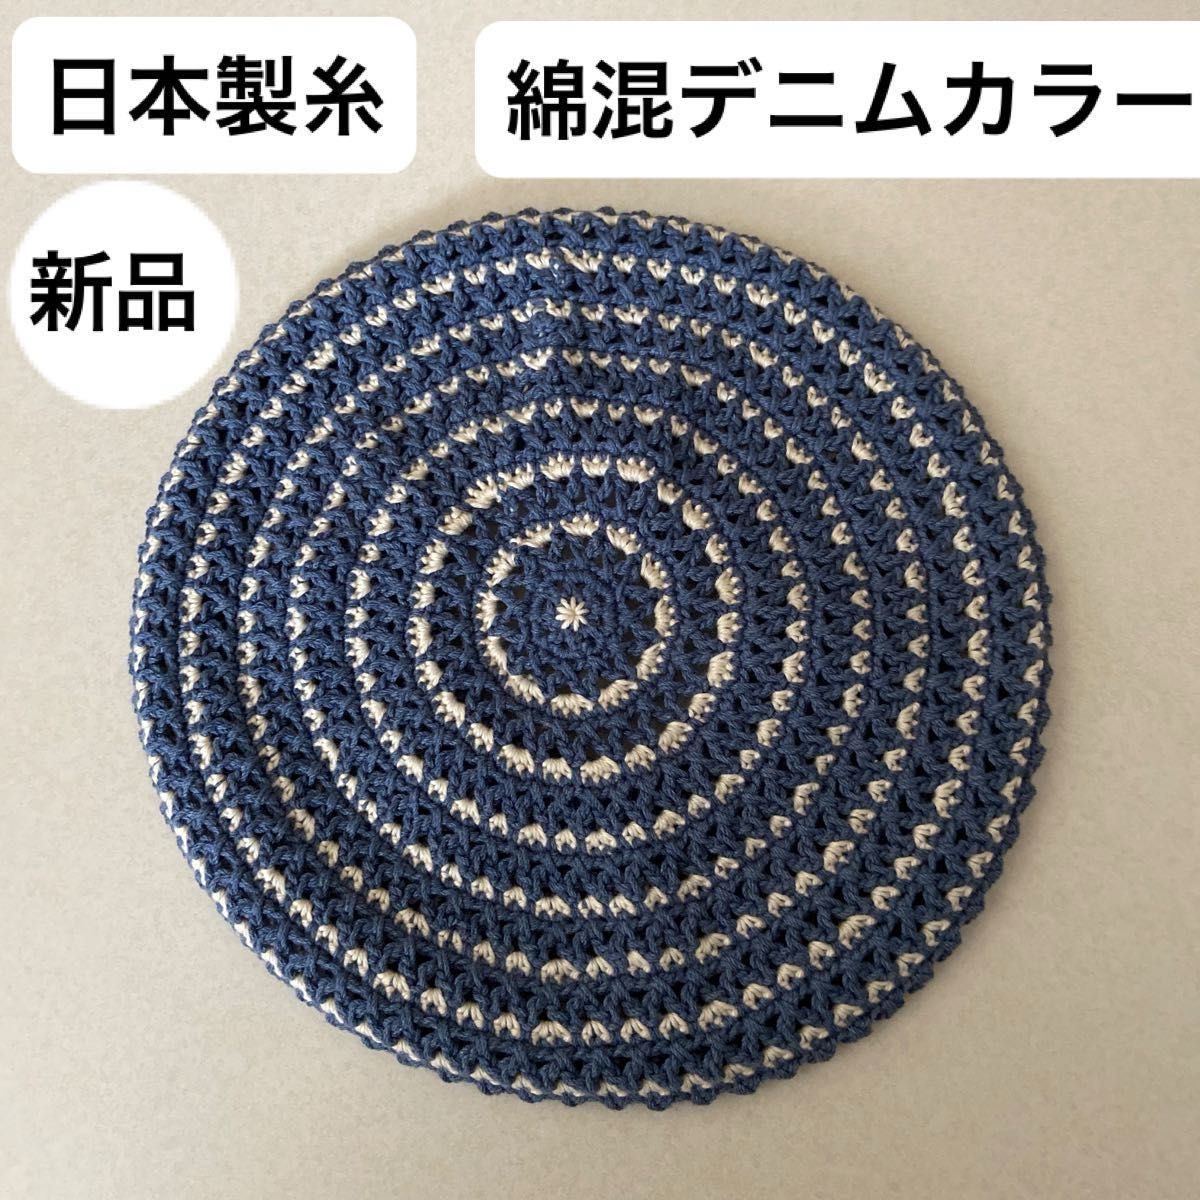 新品未使用・UVカット95%以上・日本製・綿混デニムカラー・手編み・ベレー帽・ゴム調整・汗に強く柔らかな洗えるニット